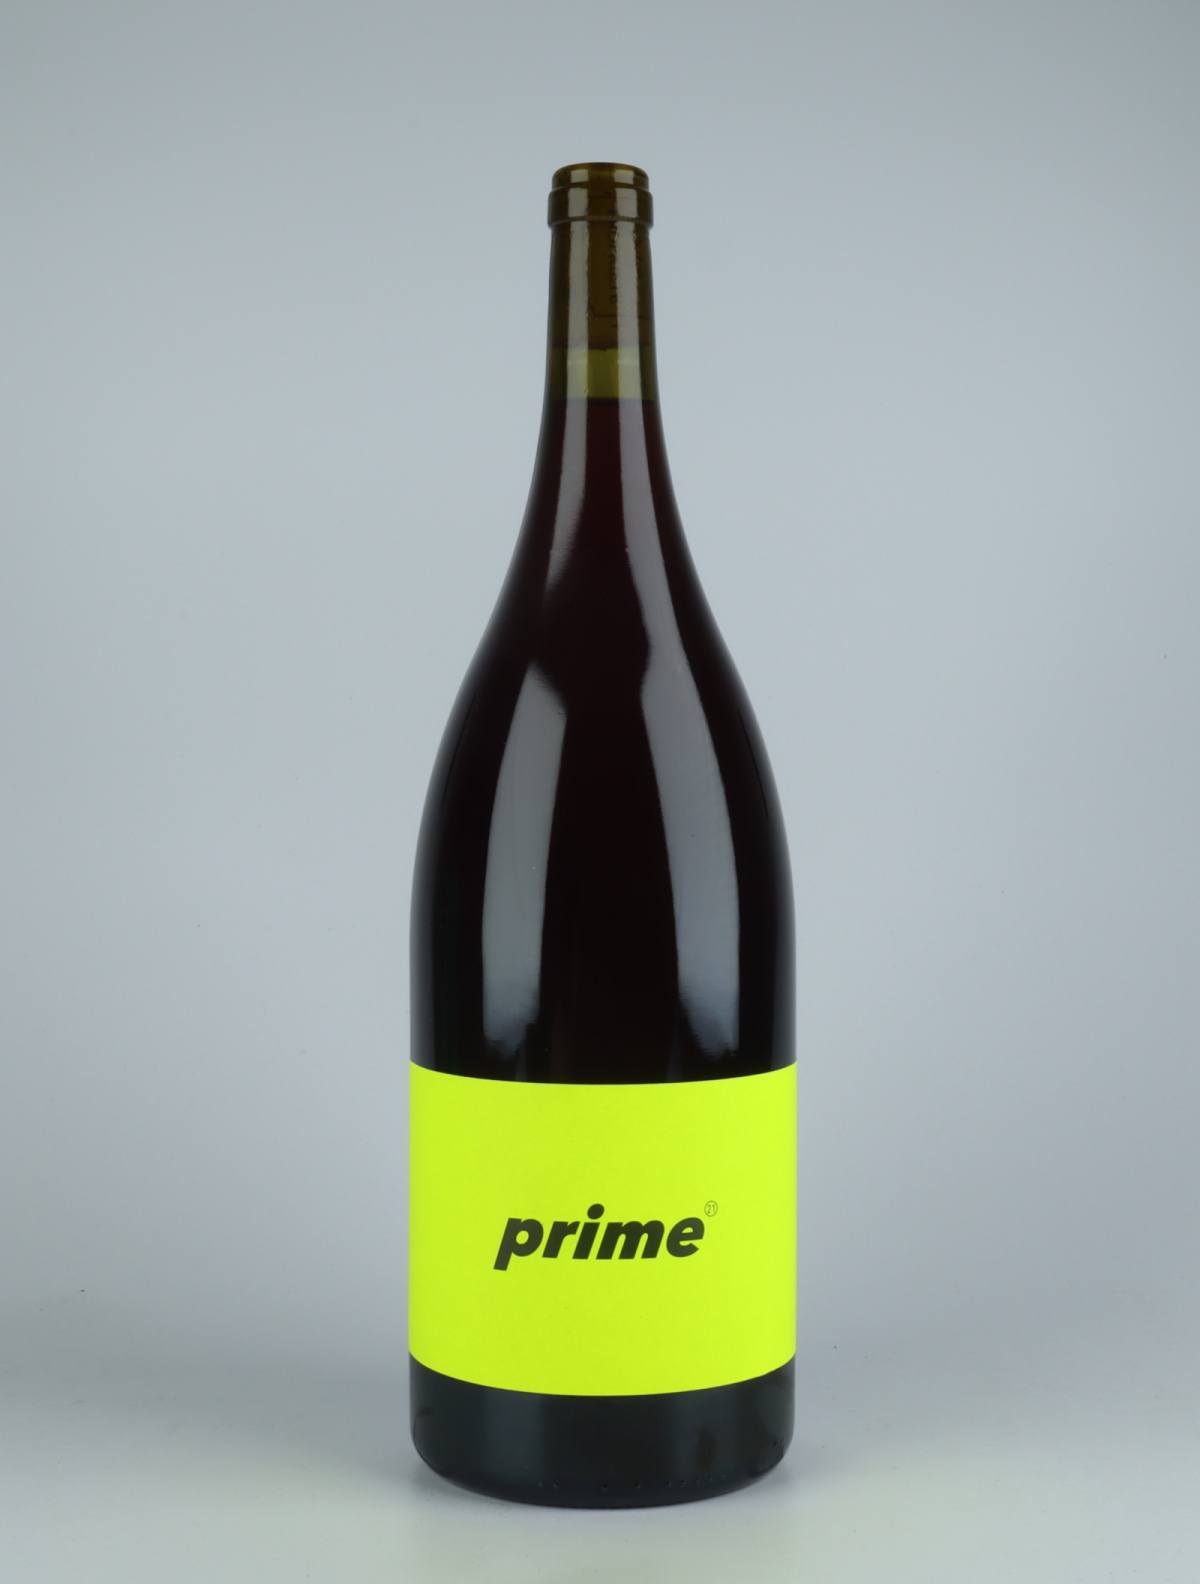 En flaske 2021 Prime Rødvin fra Les Frères Soulier, Rhône i Frankrig